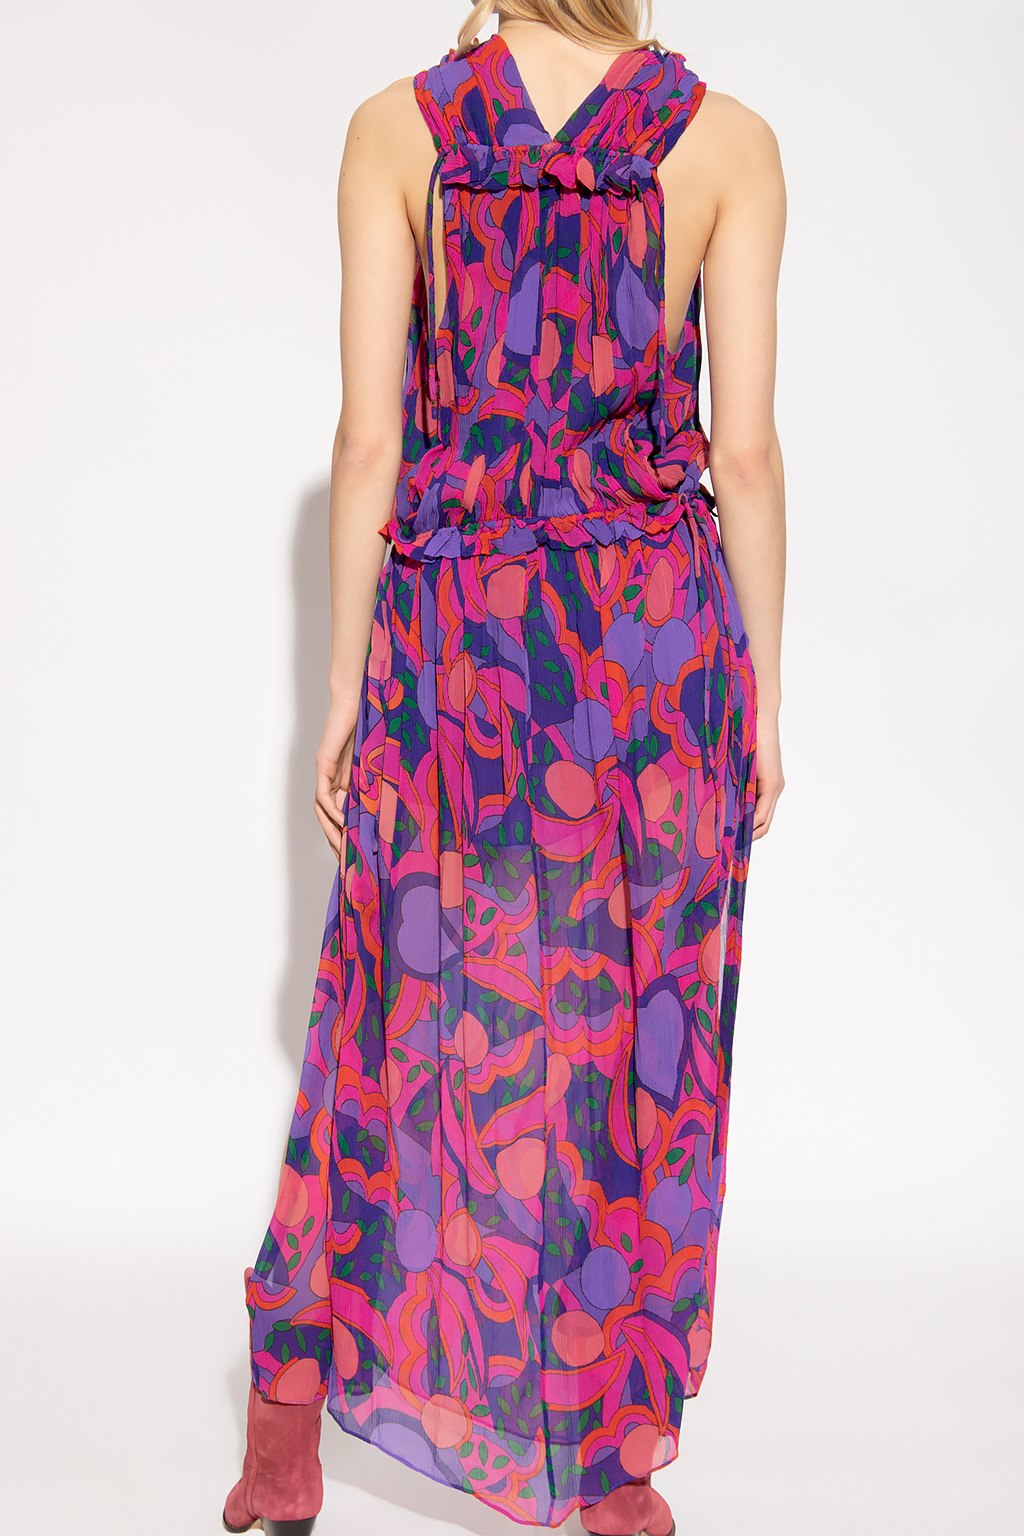 Isabel Marant ‘Alsaw’ patterned dress